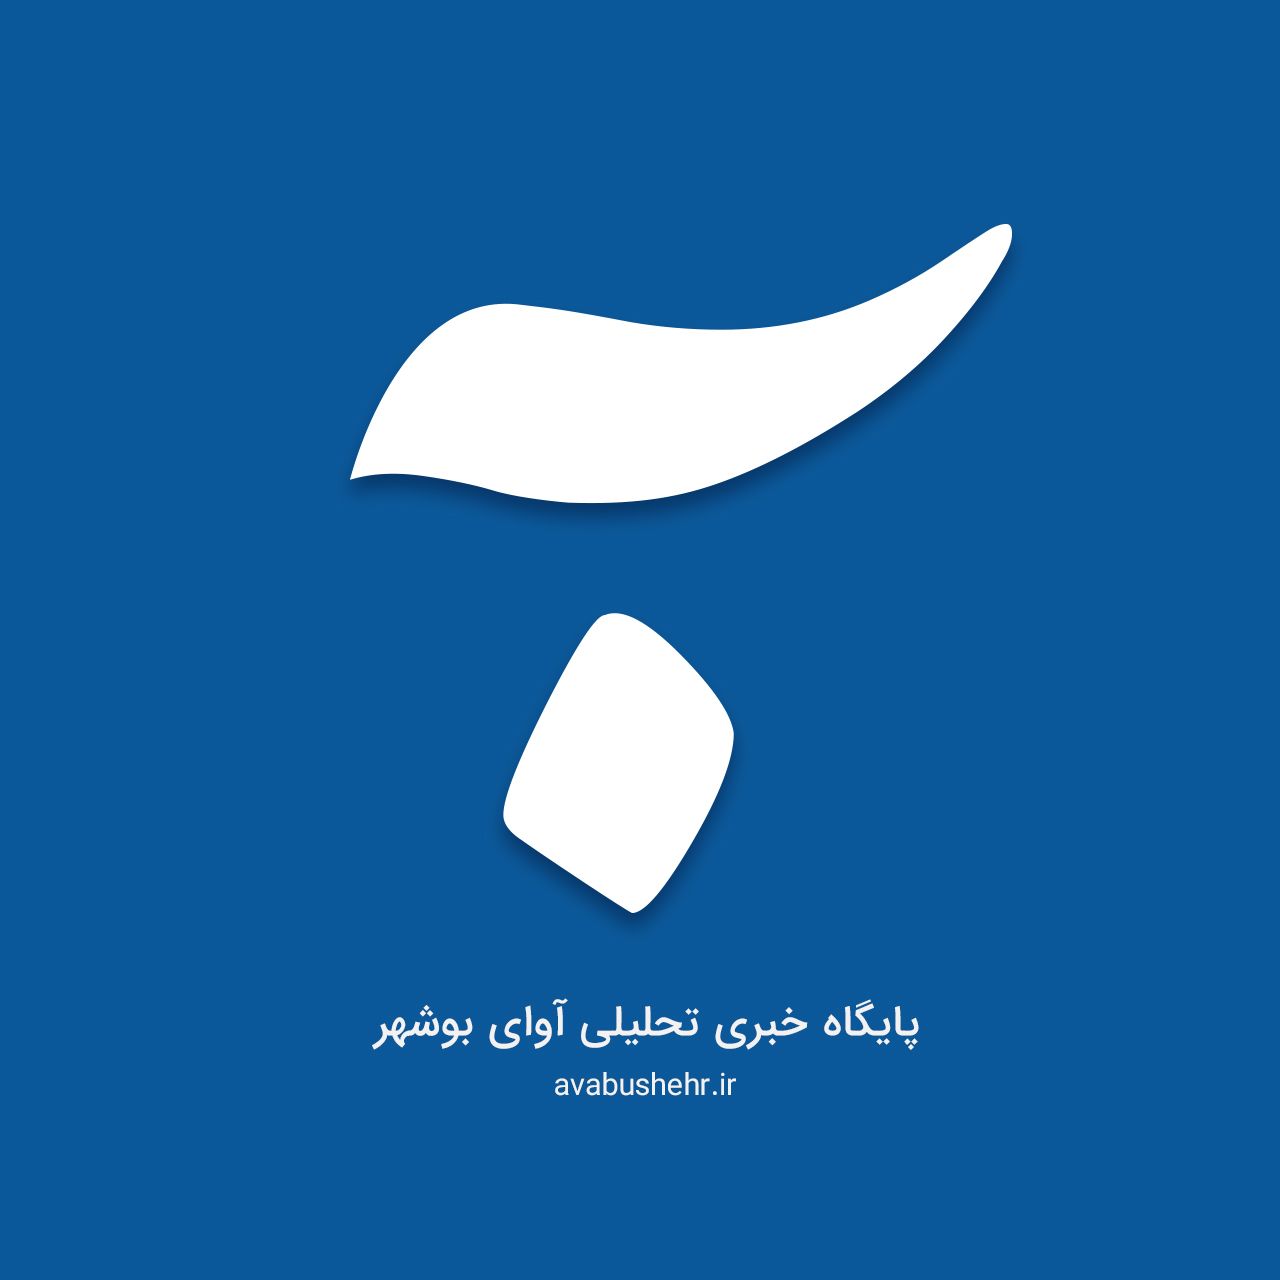 پایگاه خبری ” آوای بوشهر ” از سوی هیئت نظارت بر مطبوعات کشور مجوز گرفت